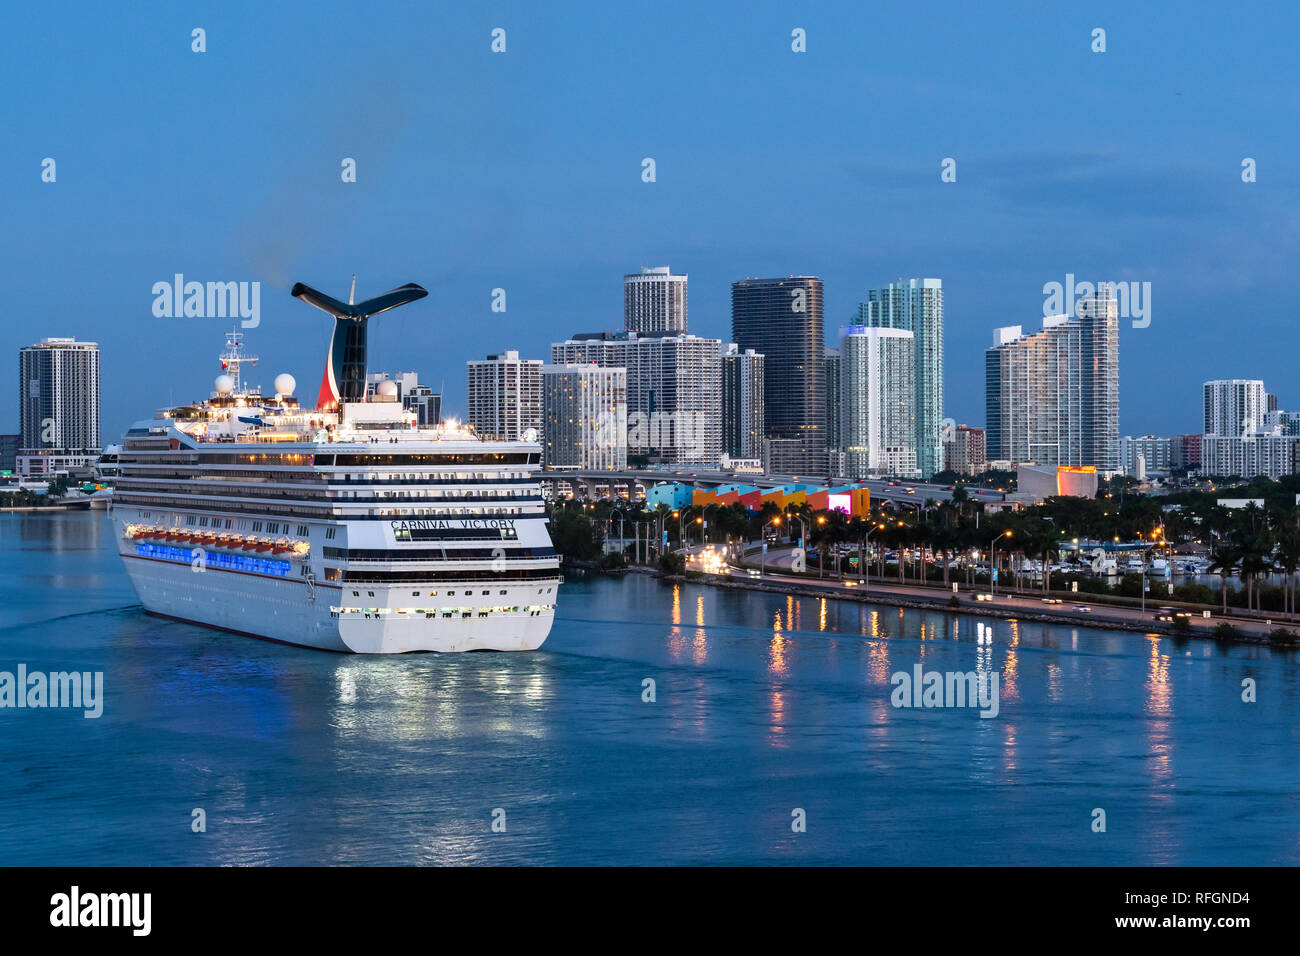 Miami, Floride - 19 novembre 2018 : Carnival bateau de croisière naviguant dans le Port de Miami au lever du soleil avec l'horizon de centre-ville de Miami dans le backgrou Banque D'Images